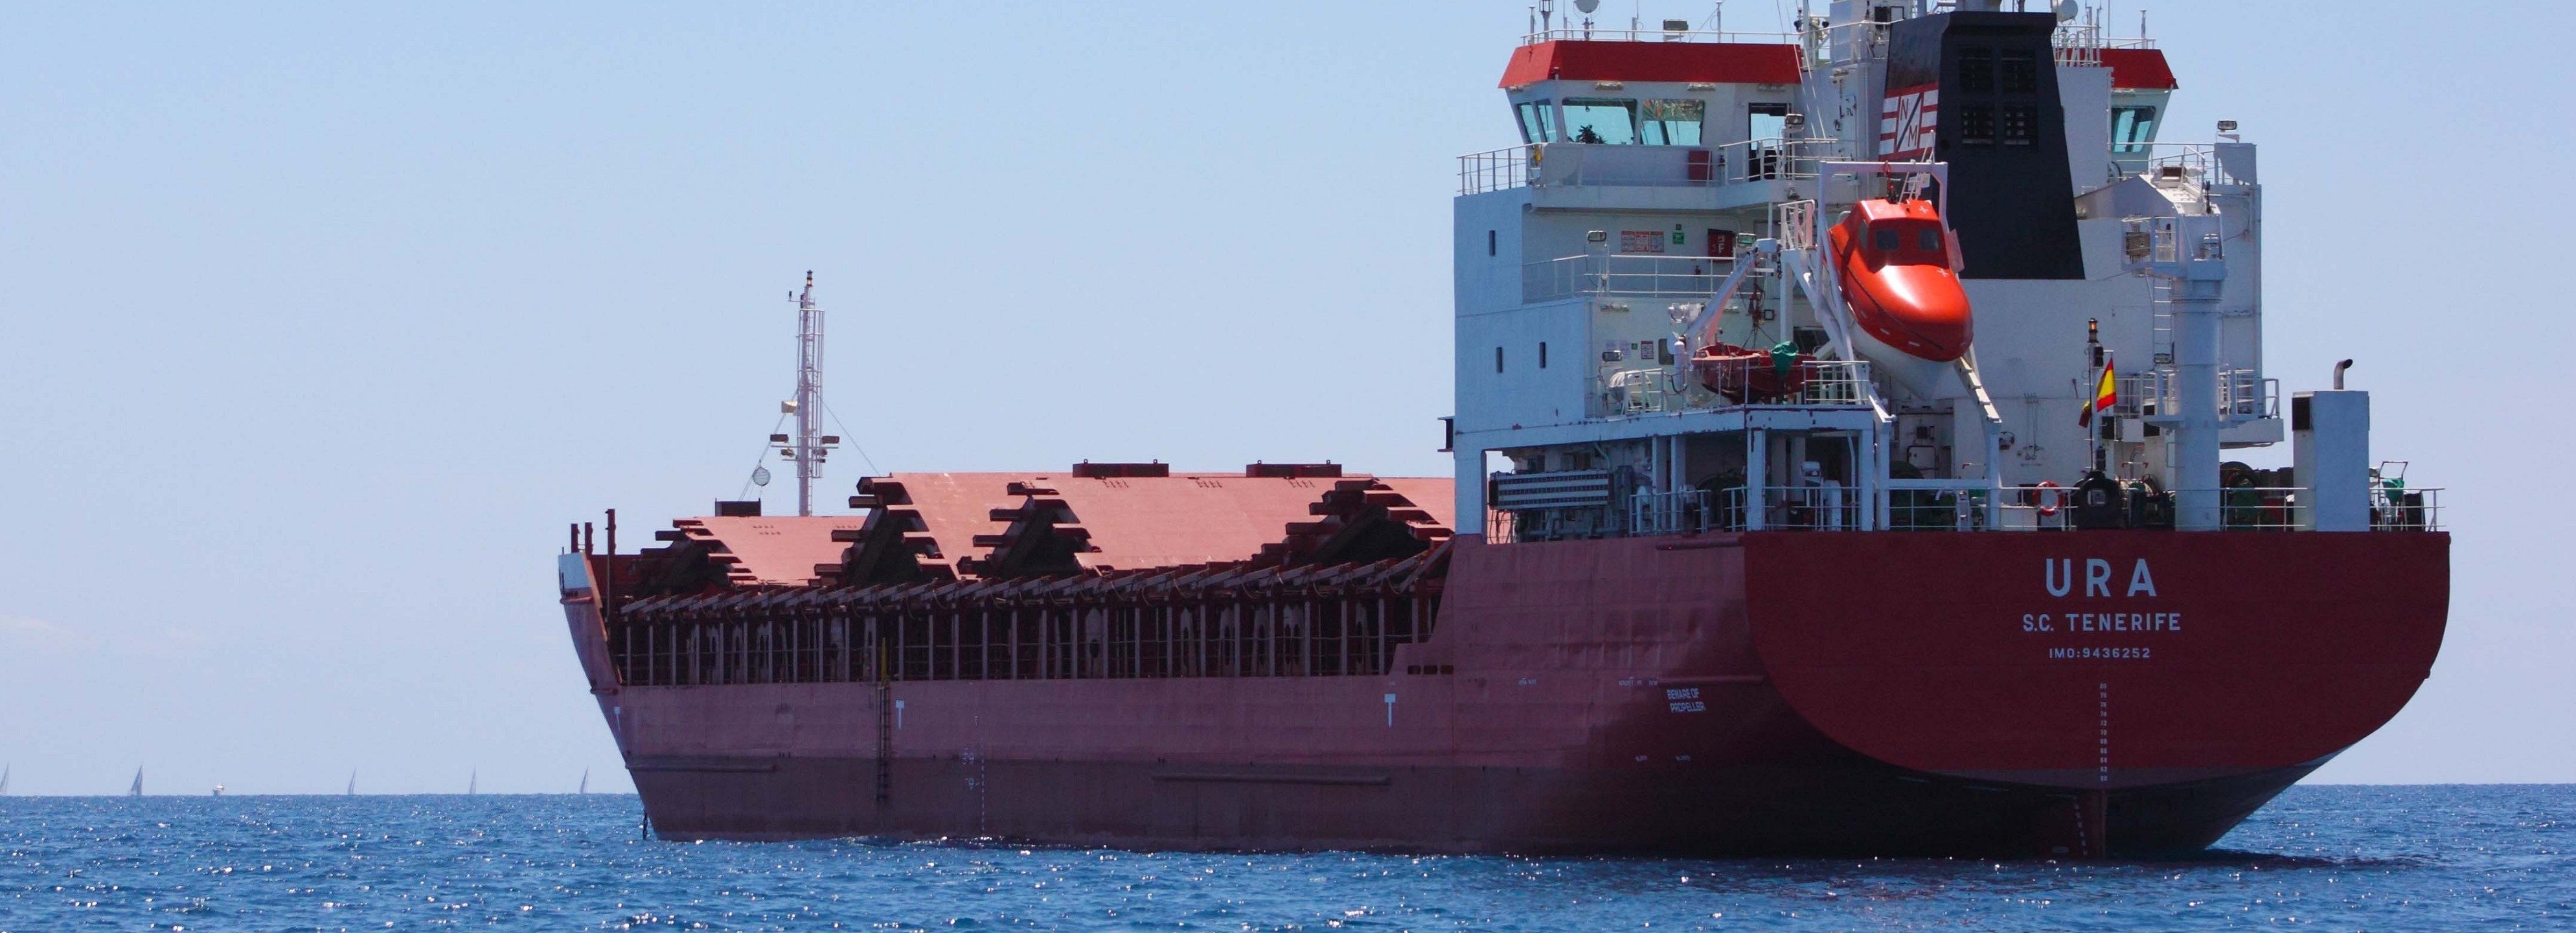 Cargo ship 